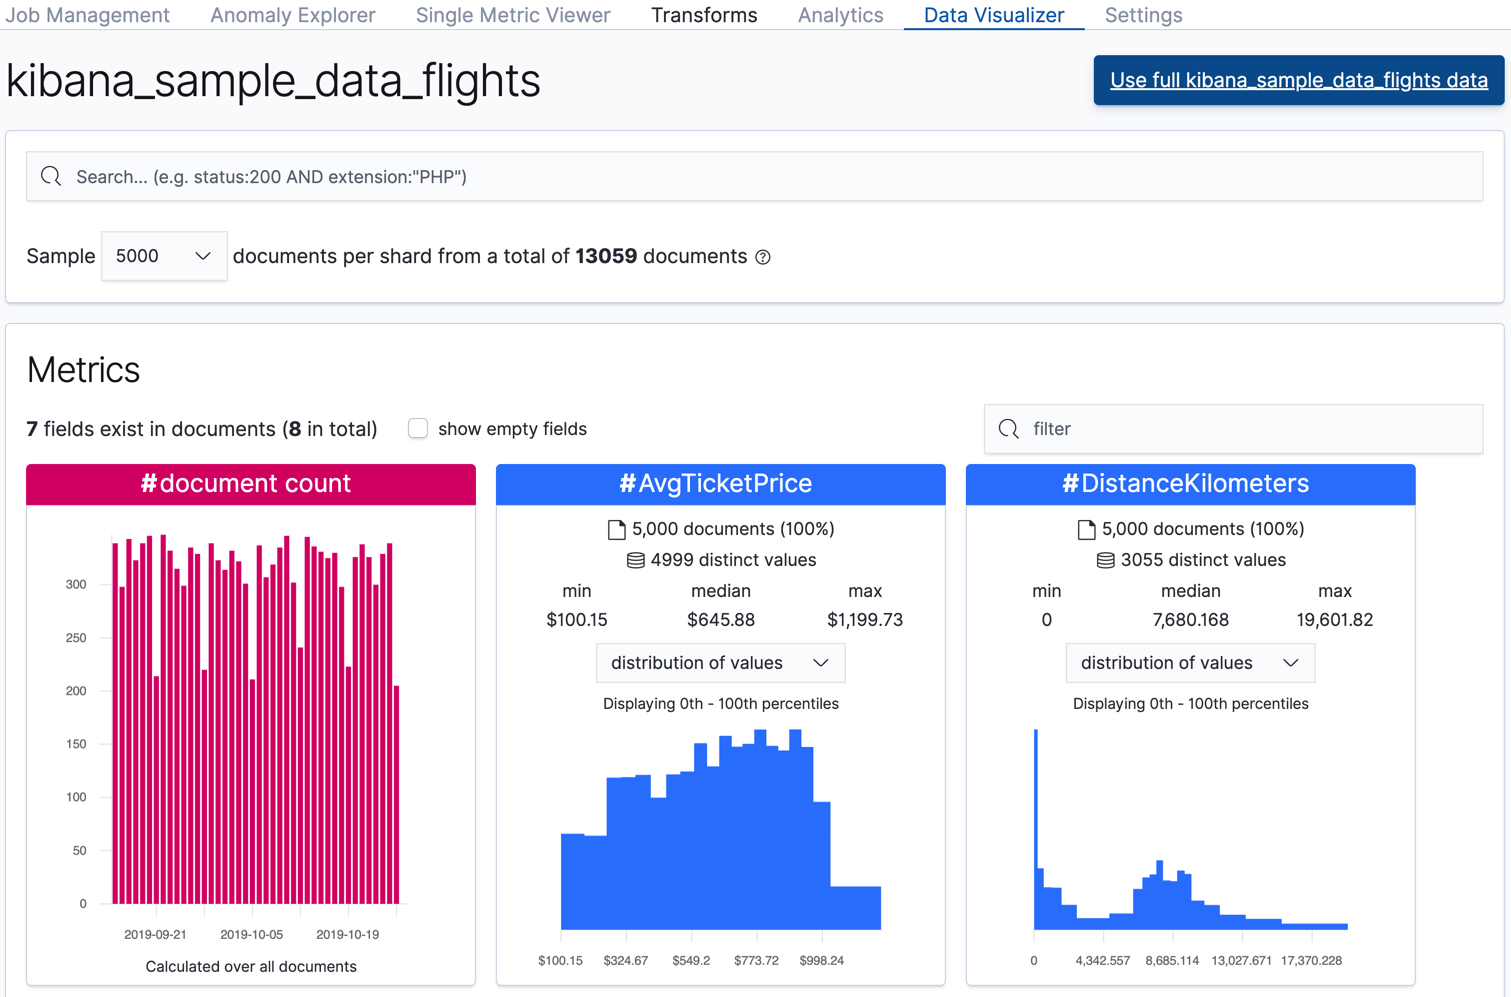 Data Visualizer for sample flight data